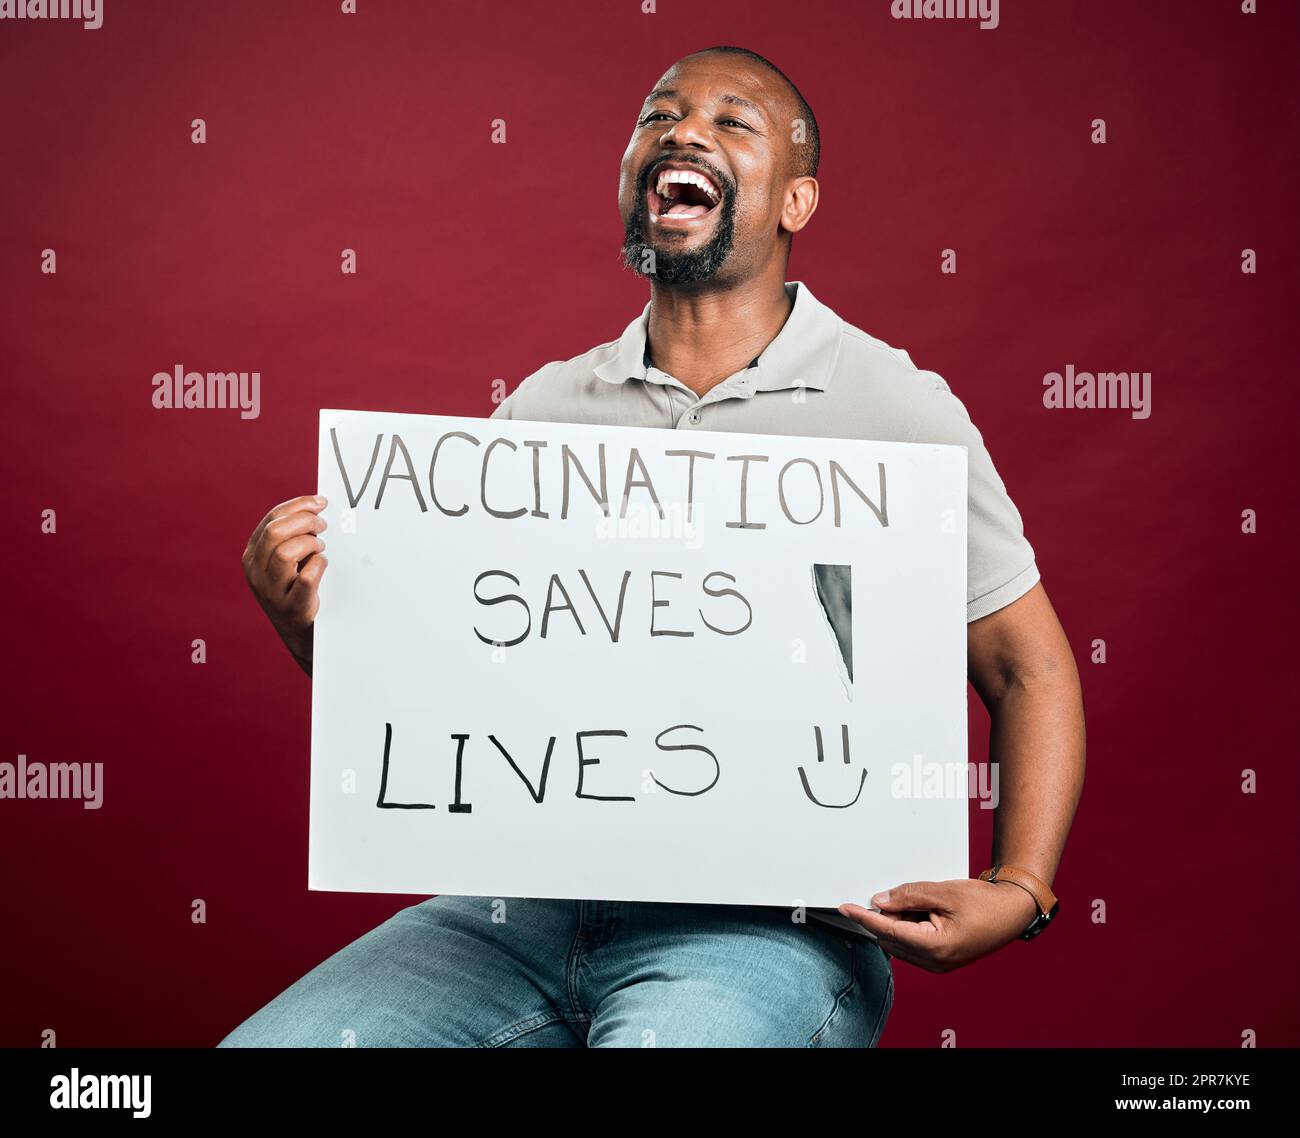 Homme vacciné covid afro-américain montrant et tenant une affiche. Criant homme noir isolé sur fond rouge studio avec espace de copie. Modèle excité avec signe pour promouvoir le vaccin corona et motiver Banque D'Images